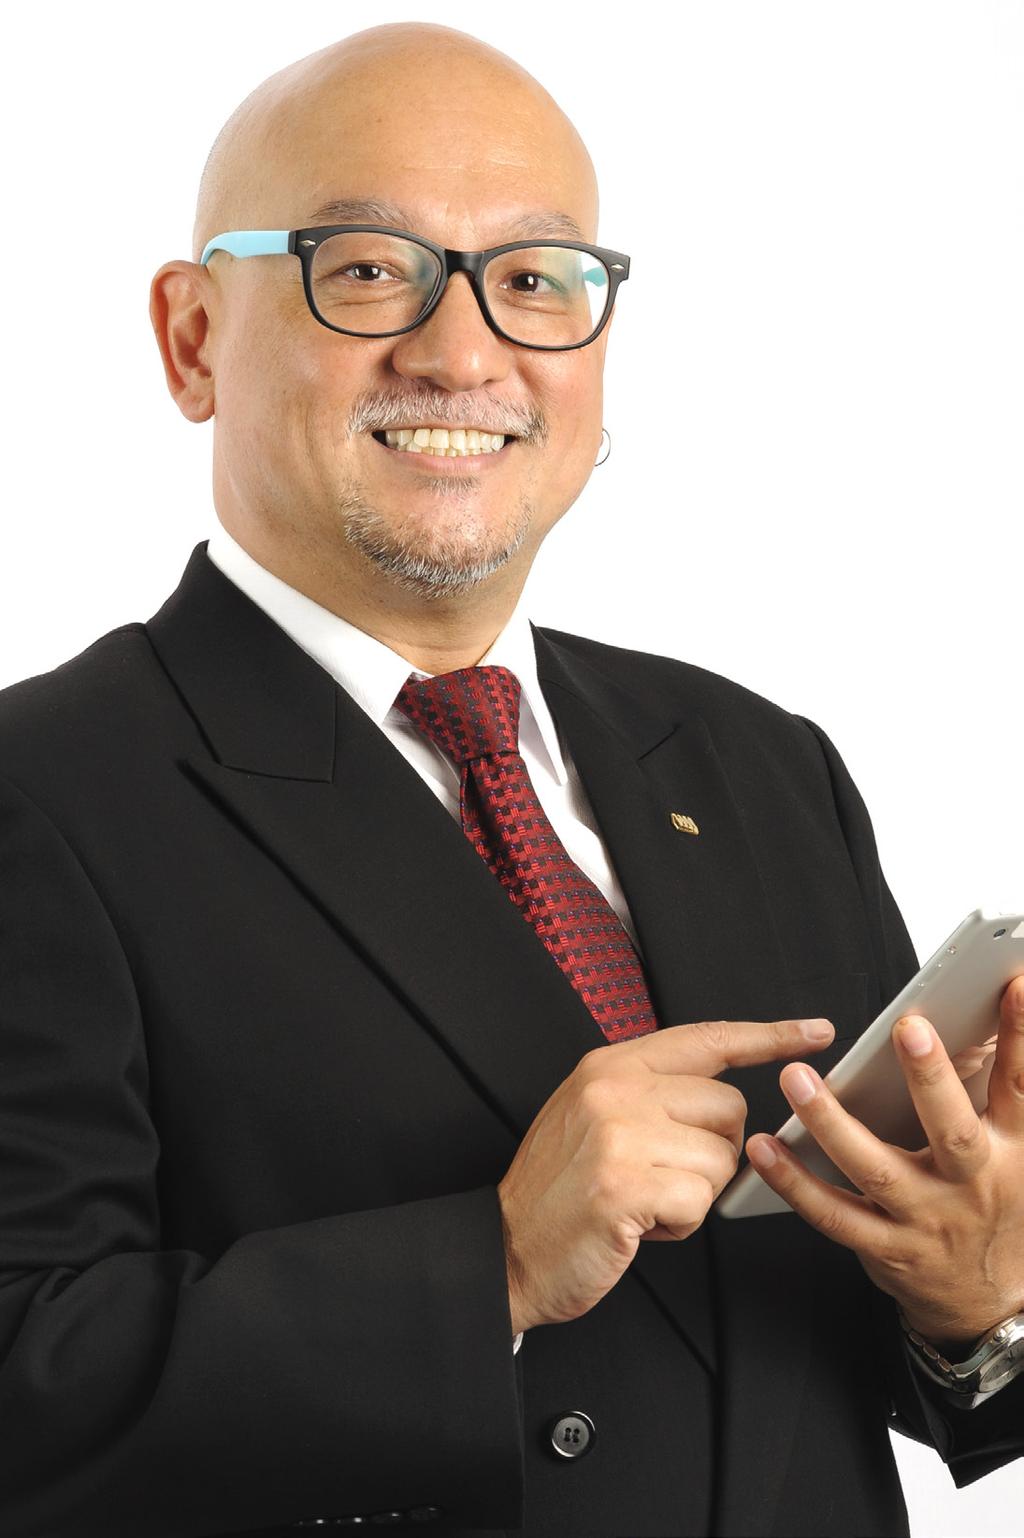 9 Tunku Yahaya @ Yahya bin Tunku Tan Sri Abdullah was appointed to the Board on 10 January 2007.